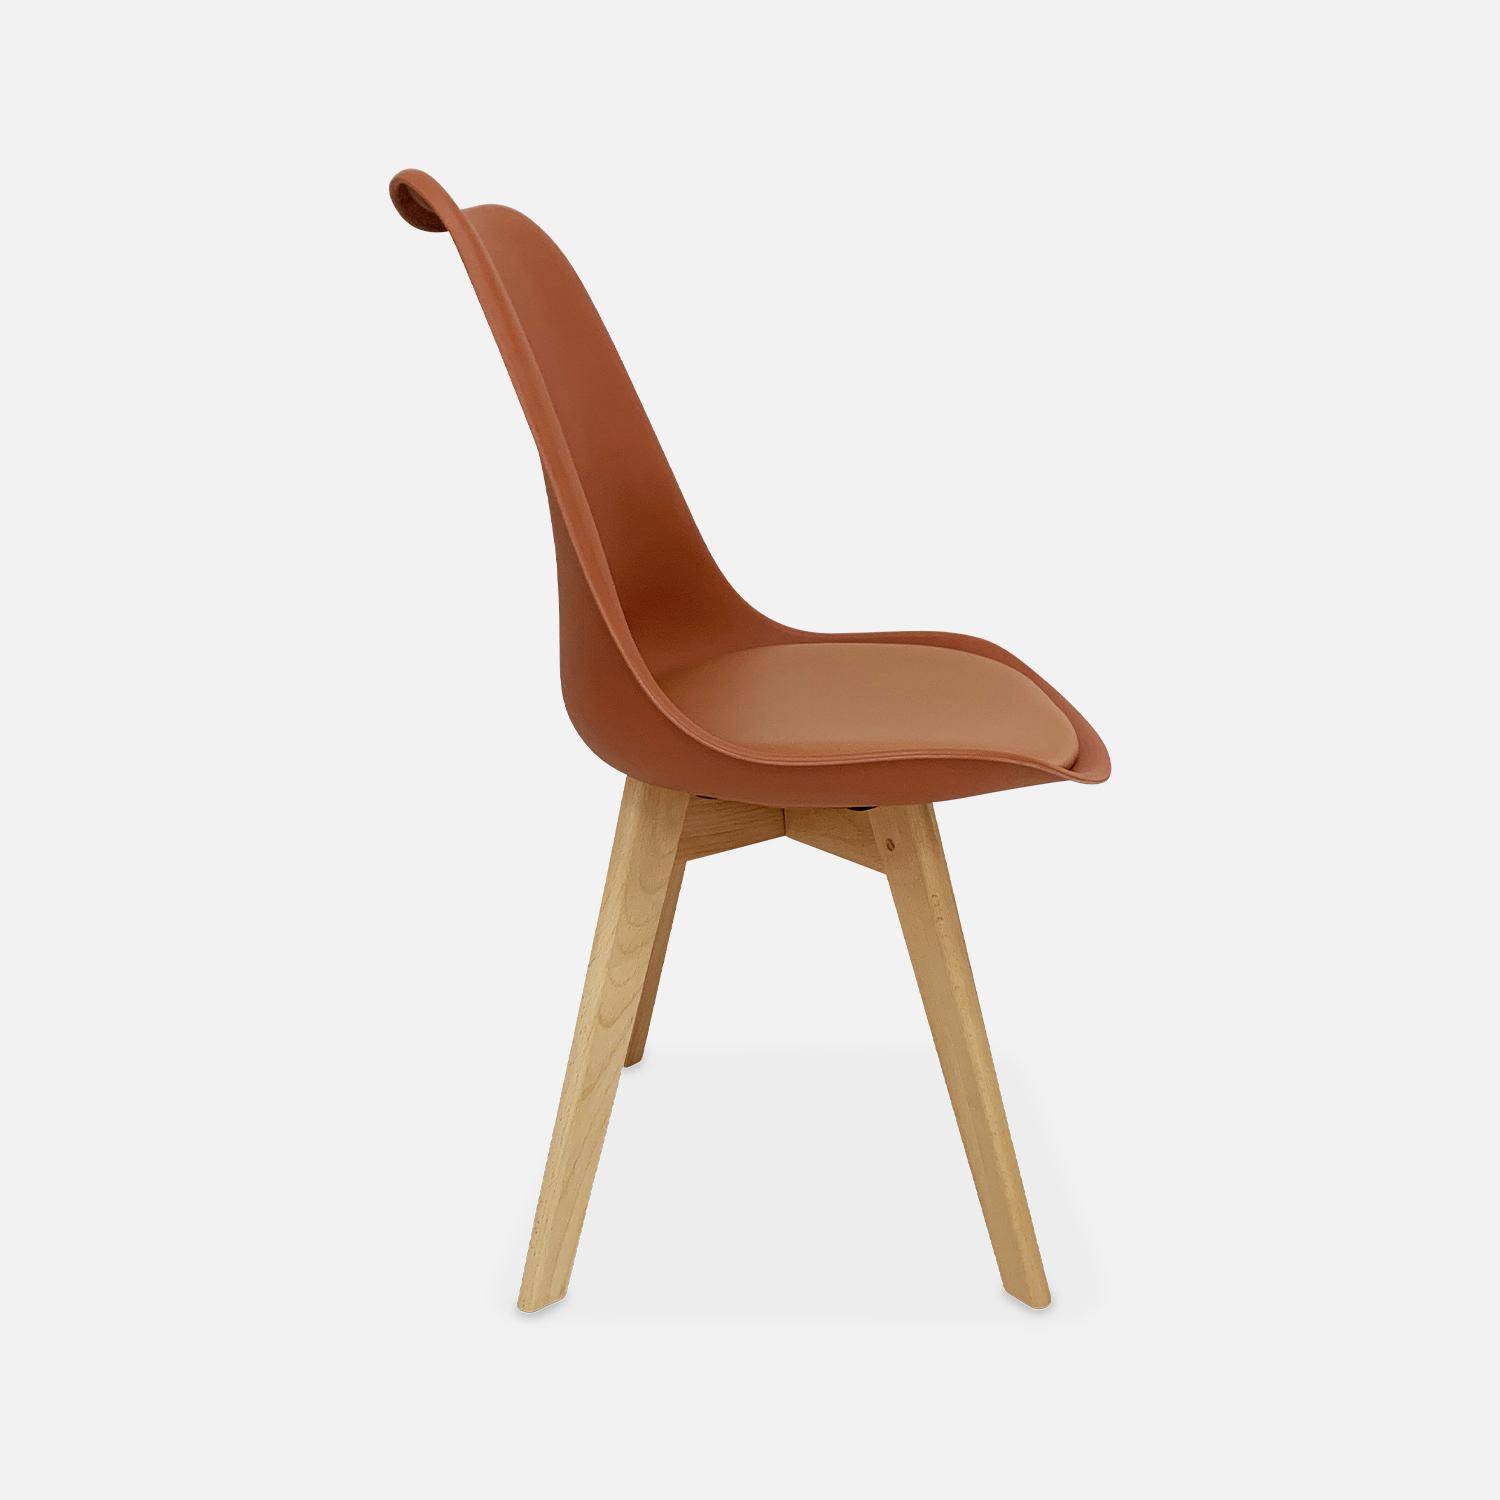 Conjunto de 4 sillas escandinavas, patas de madera de haya, asientos individuales, terracota Photo6